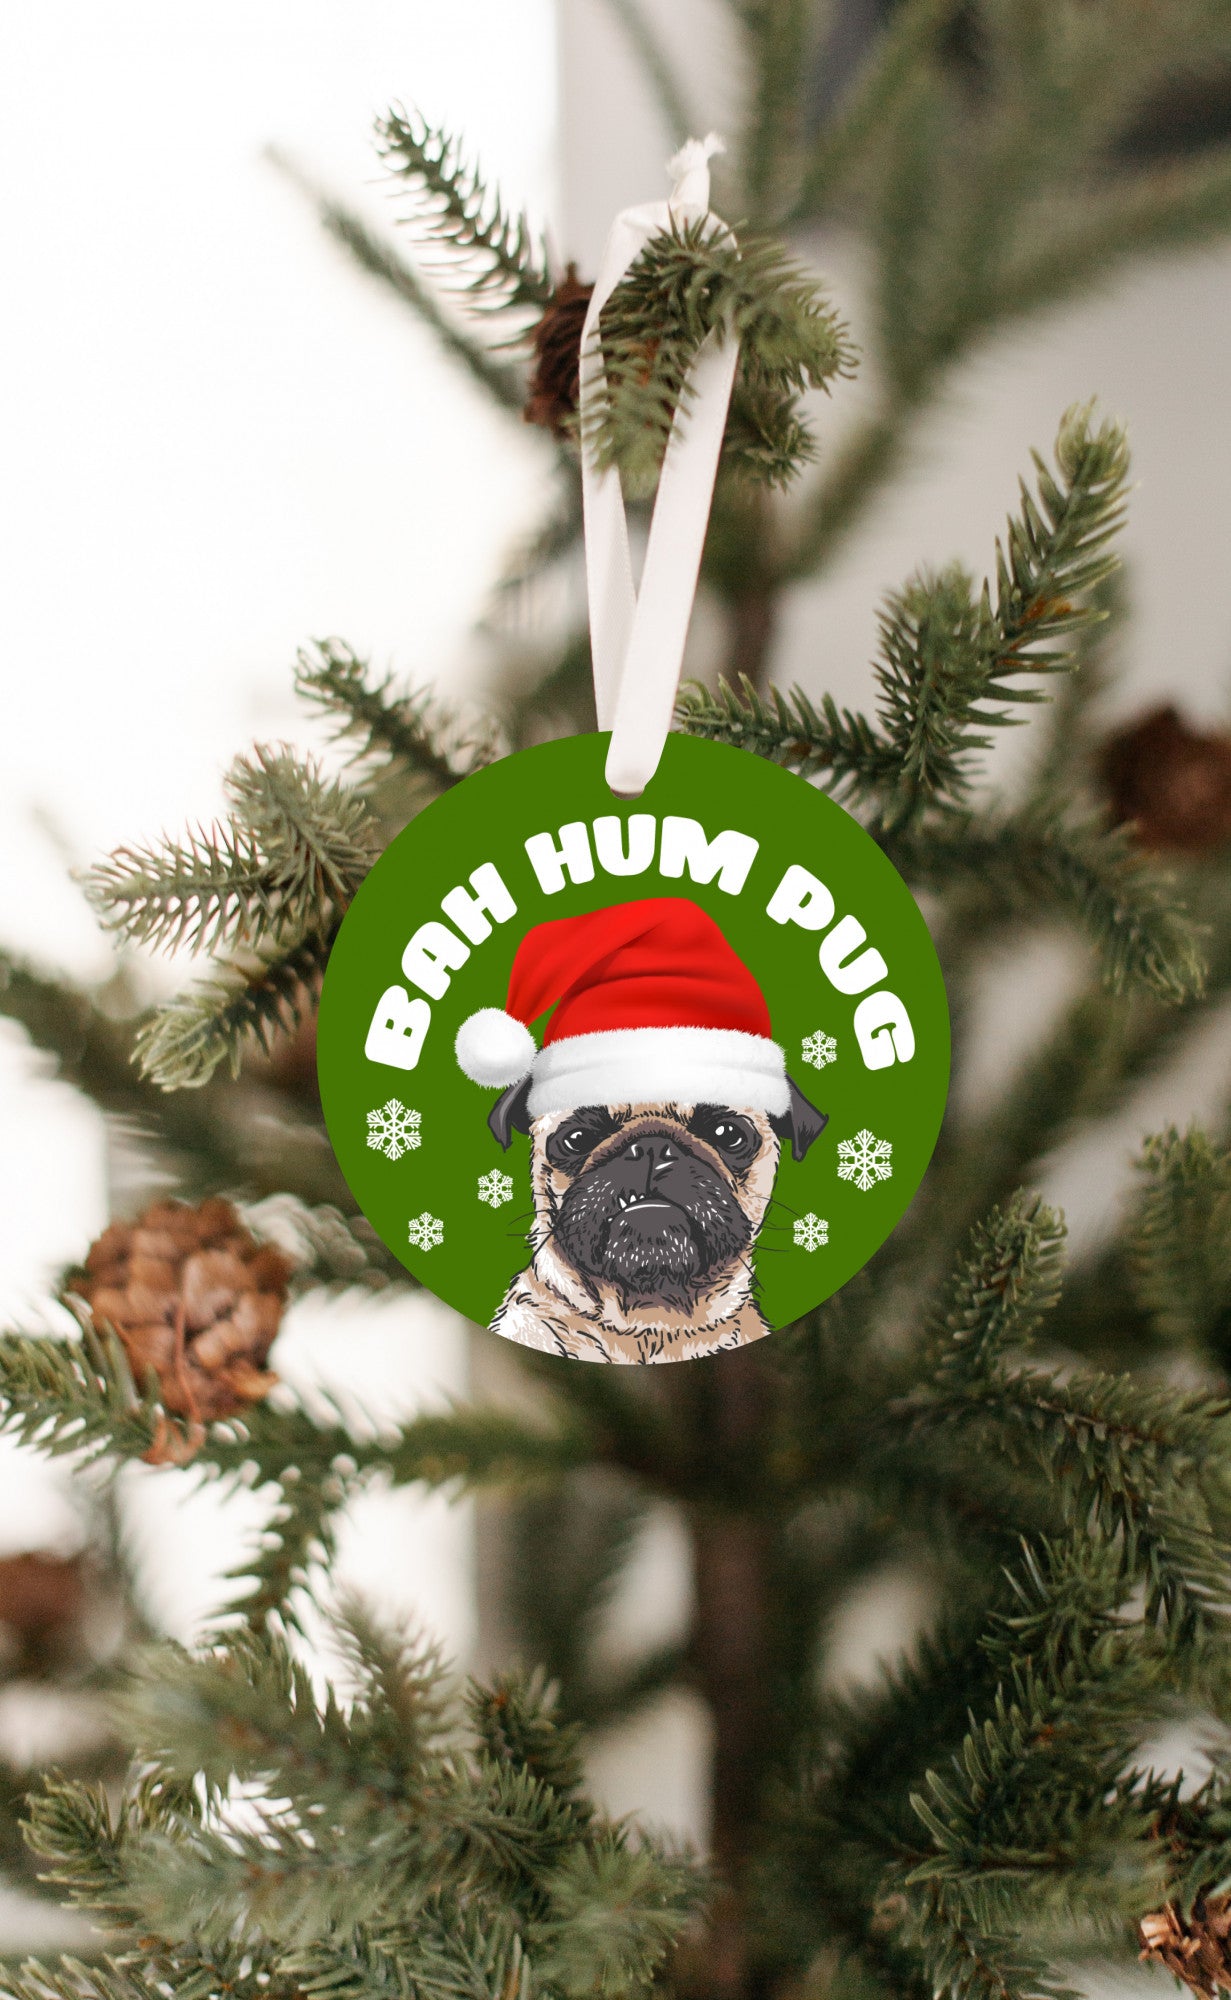 Bah Hum Pug Christmas Ornament